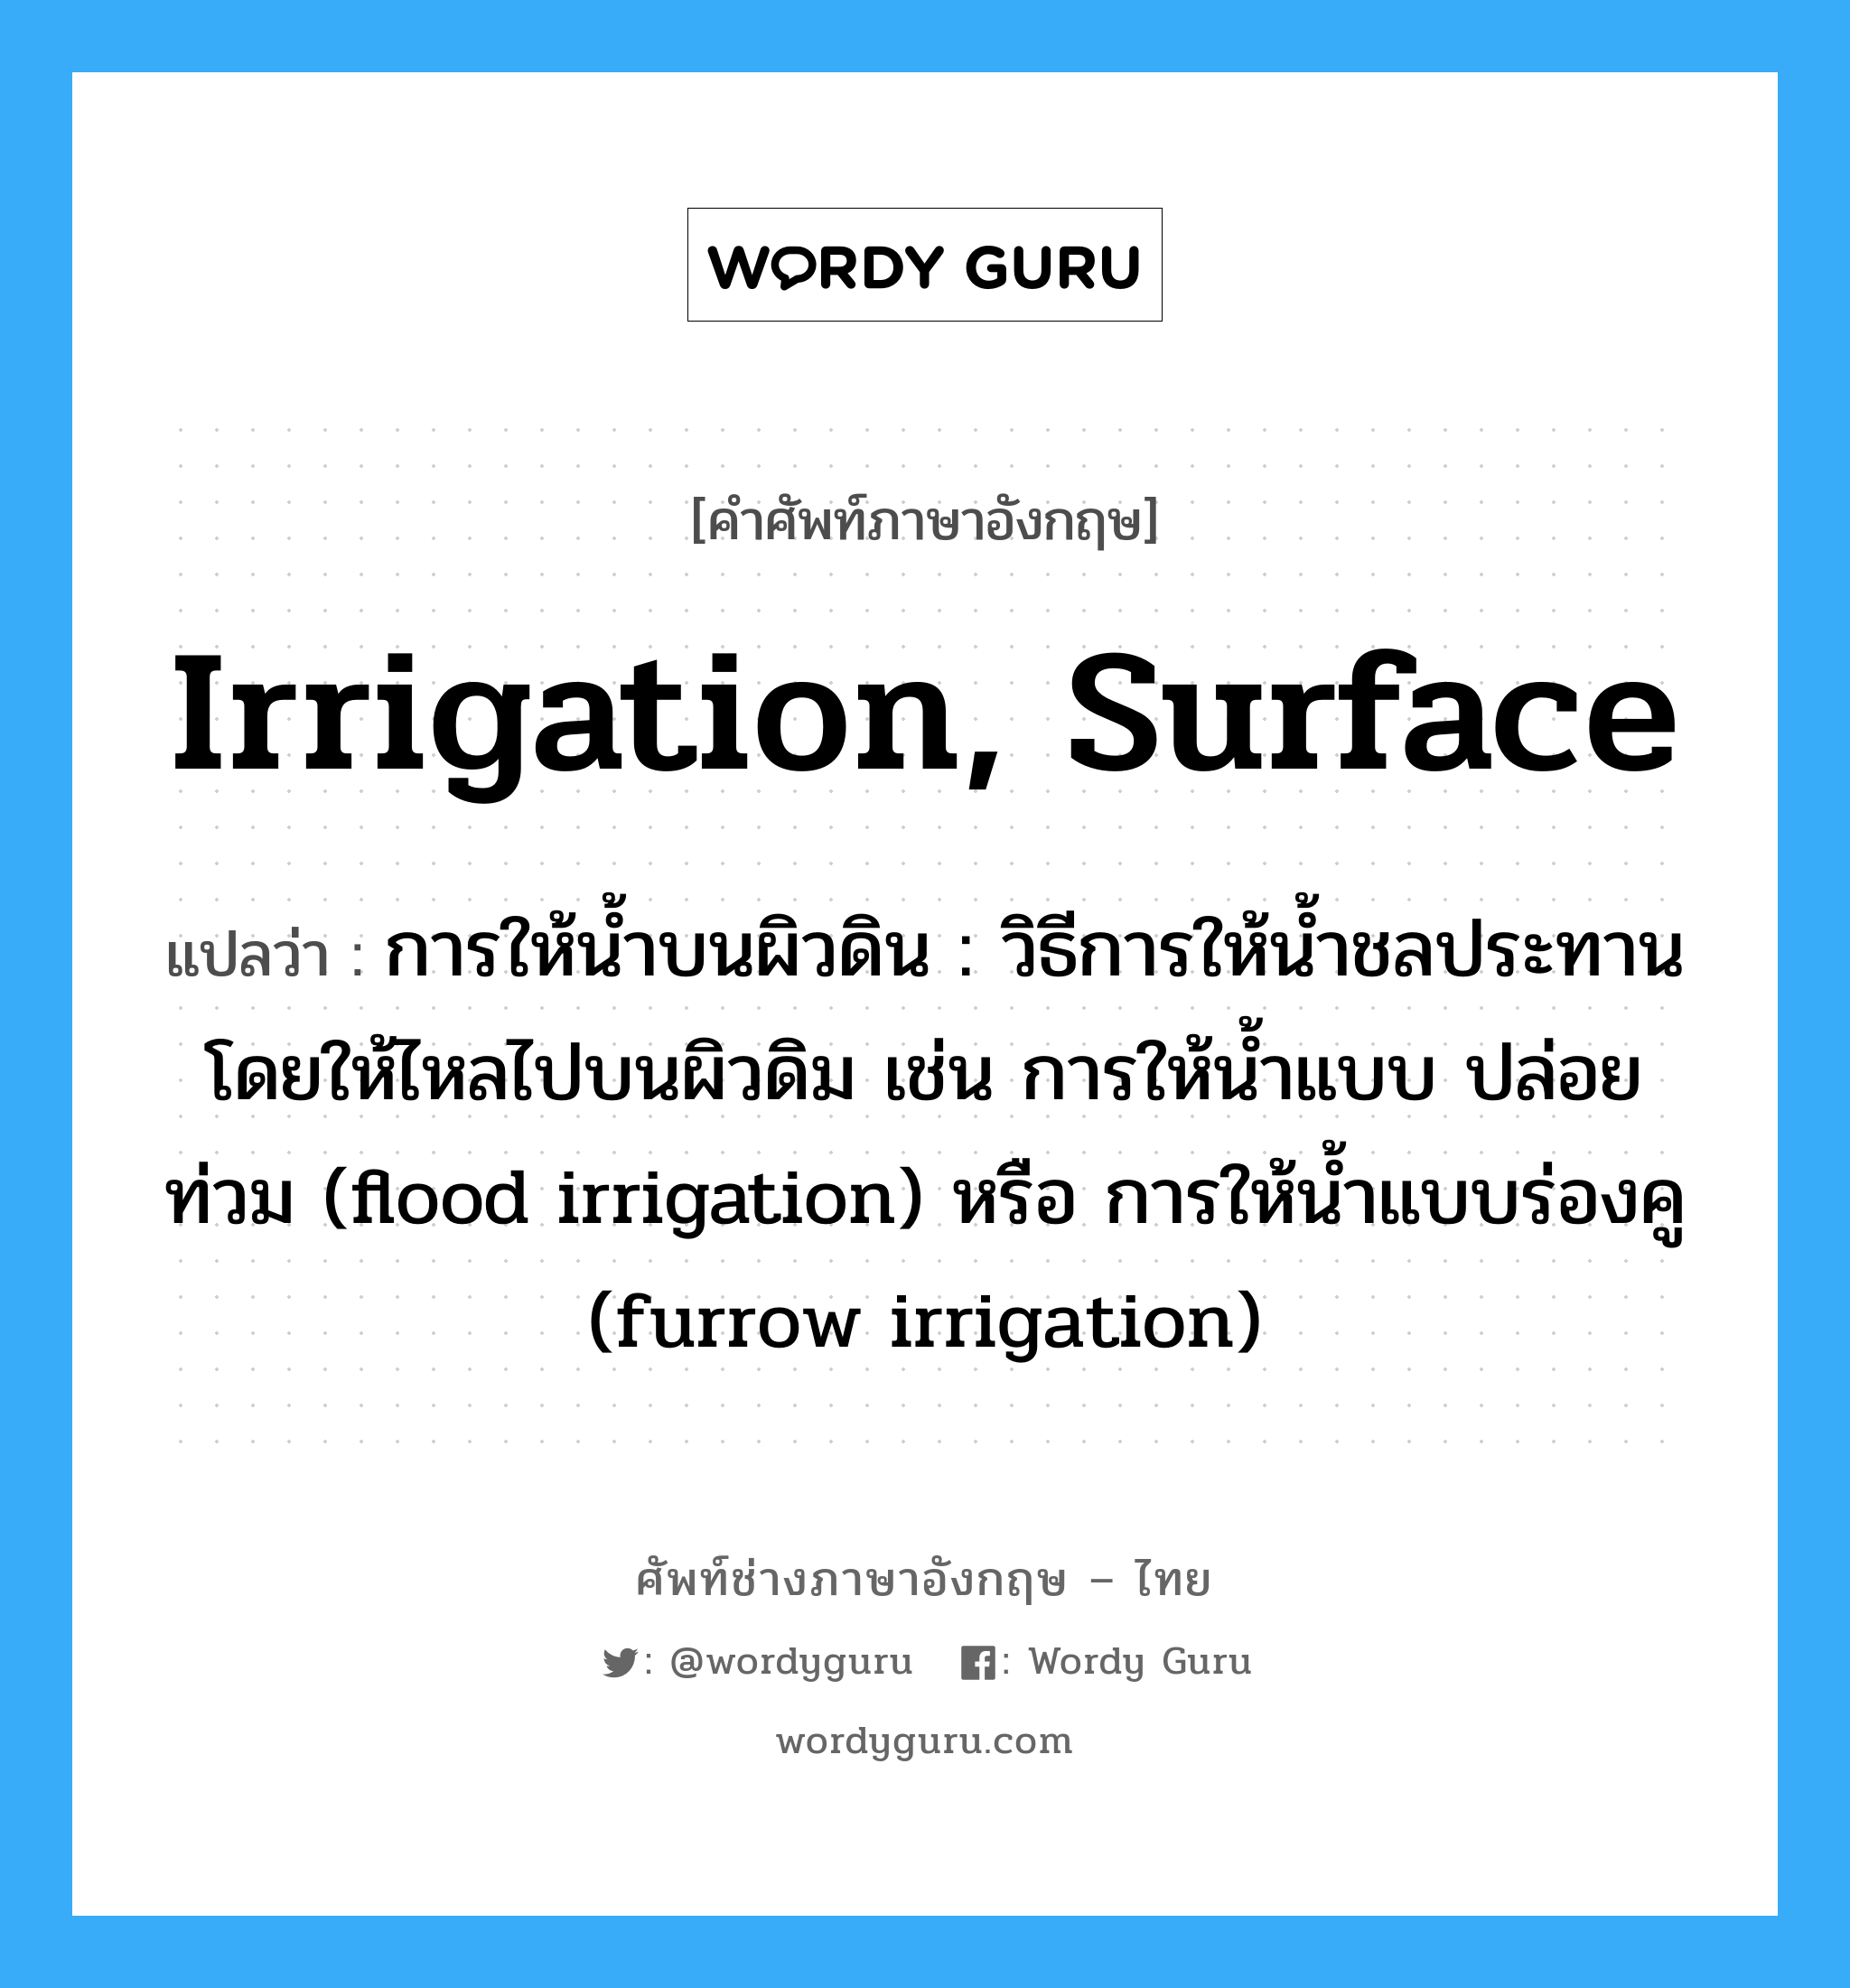 การให้น้ำบนผิวดิน : วิธีการให้น้ำชลประทานโดยให้ไหลไปบนผิวดิม เช่น การให้น้ำแบบ ปล่อยท่วม (flood irrigation) หรือ การให้น้ำแบบร่องคู (furrow irrigation) ภาษาอังกฤษ?, คำศัพท์ช่างภาษาอังกฤษ - ไทย การให้น้ำบนผิวดิน : วิธีการให้น้ำชลประทานโดยให้ไหลไปบนผิวดิม เช่น การให้น้ำแบบ ปล่อยท่วม (flood irrigation) หรือ การให้น้ำแบบร่องคู (furrow irrigation) คำศัพท์ภาษาอังกฤษ การให้น้ำบนผิวดิน : วิธีการให้น้ำชลประทานโดยให้ไหลไปบนผิวดิม เช่น การให้น้ำแบบ ปล่อยท่วม (flood irrigation) หรือ การให้น้ำแบบร่องคู (furrow irrigation) แปลว่า irrigation, surface